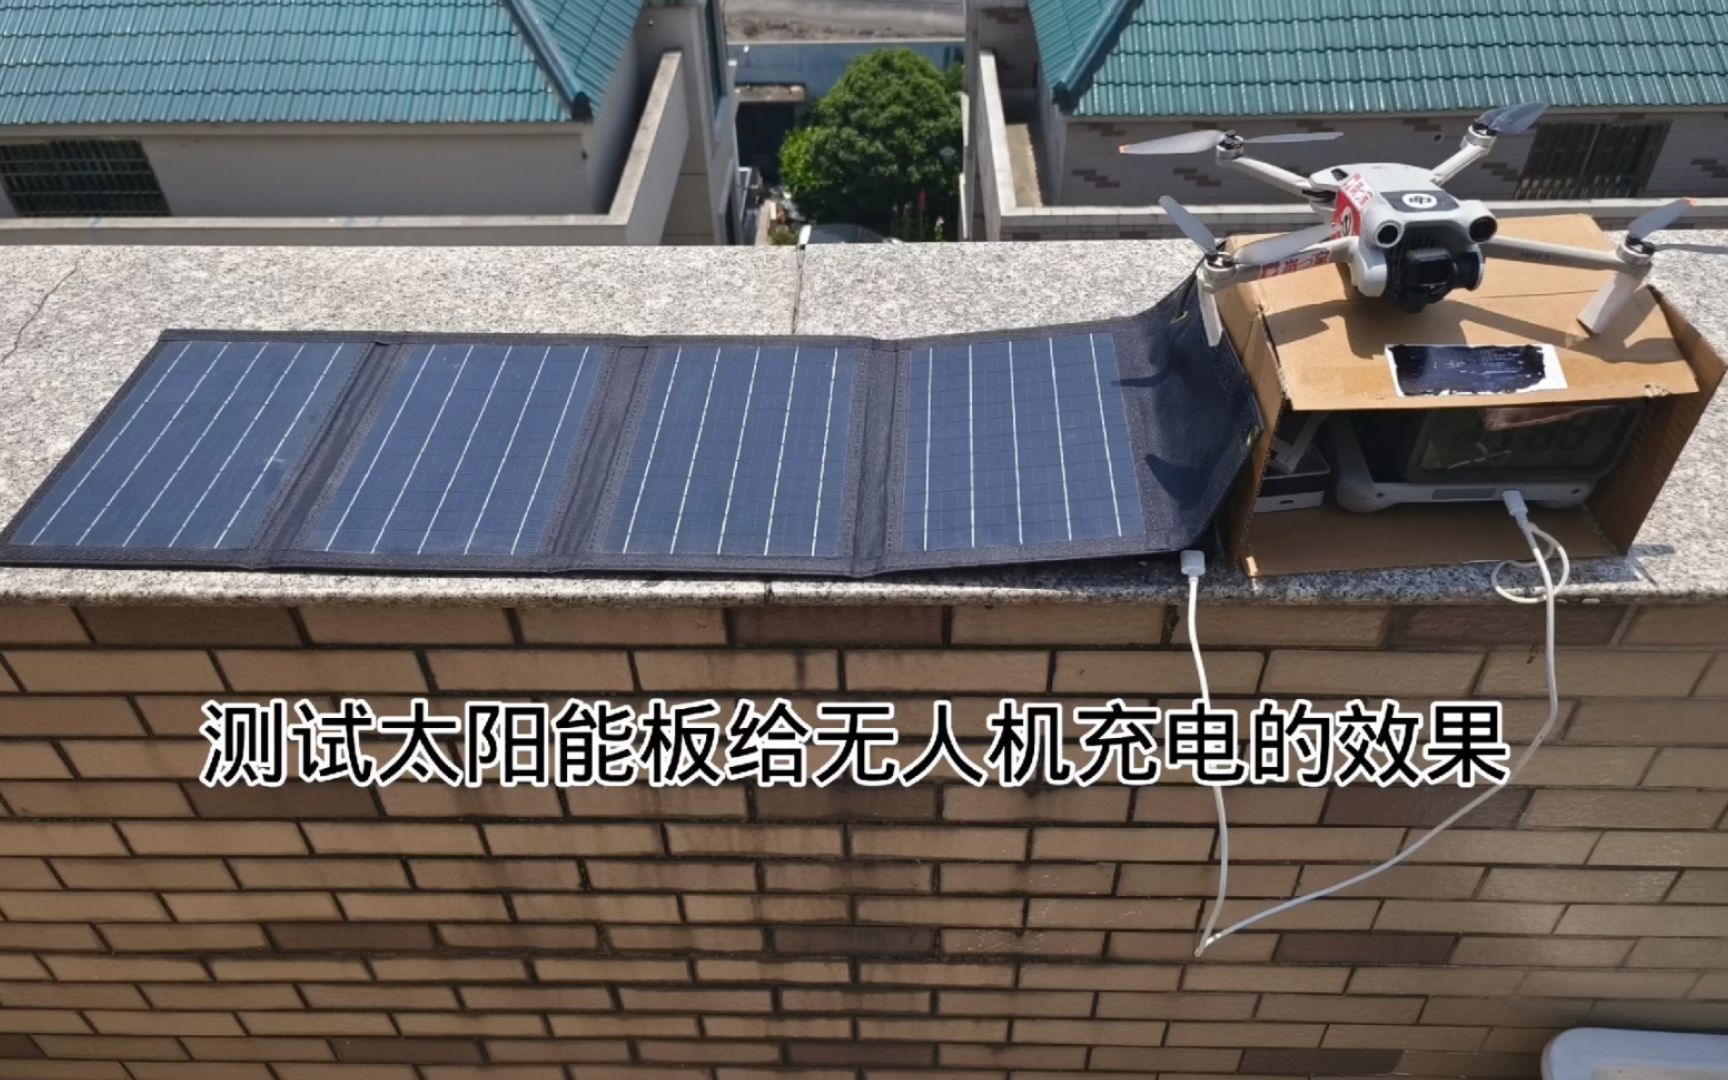 测试太阳能电池板给mini3Pro充电效果